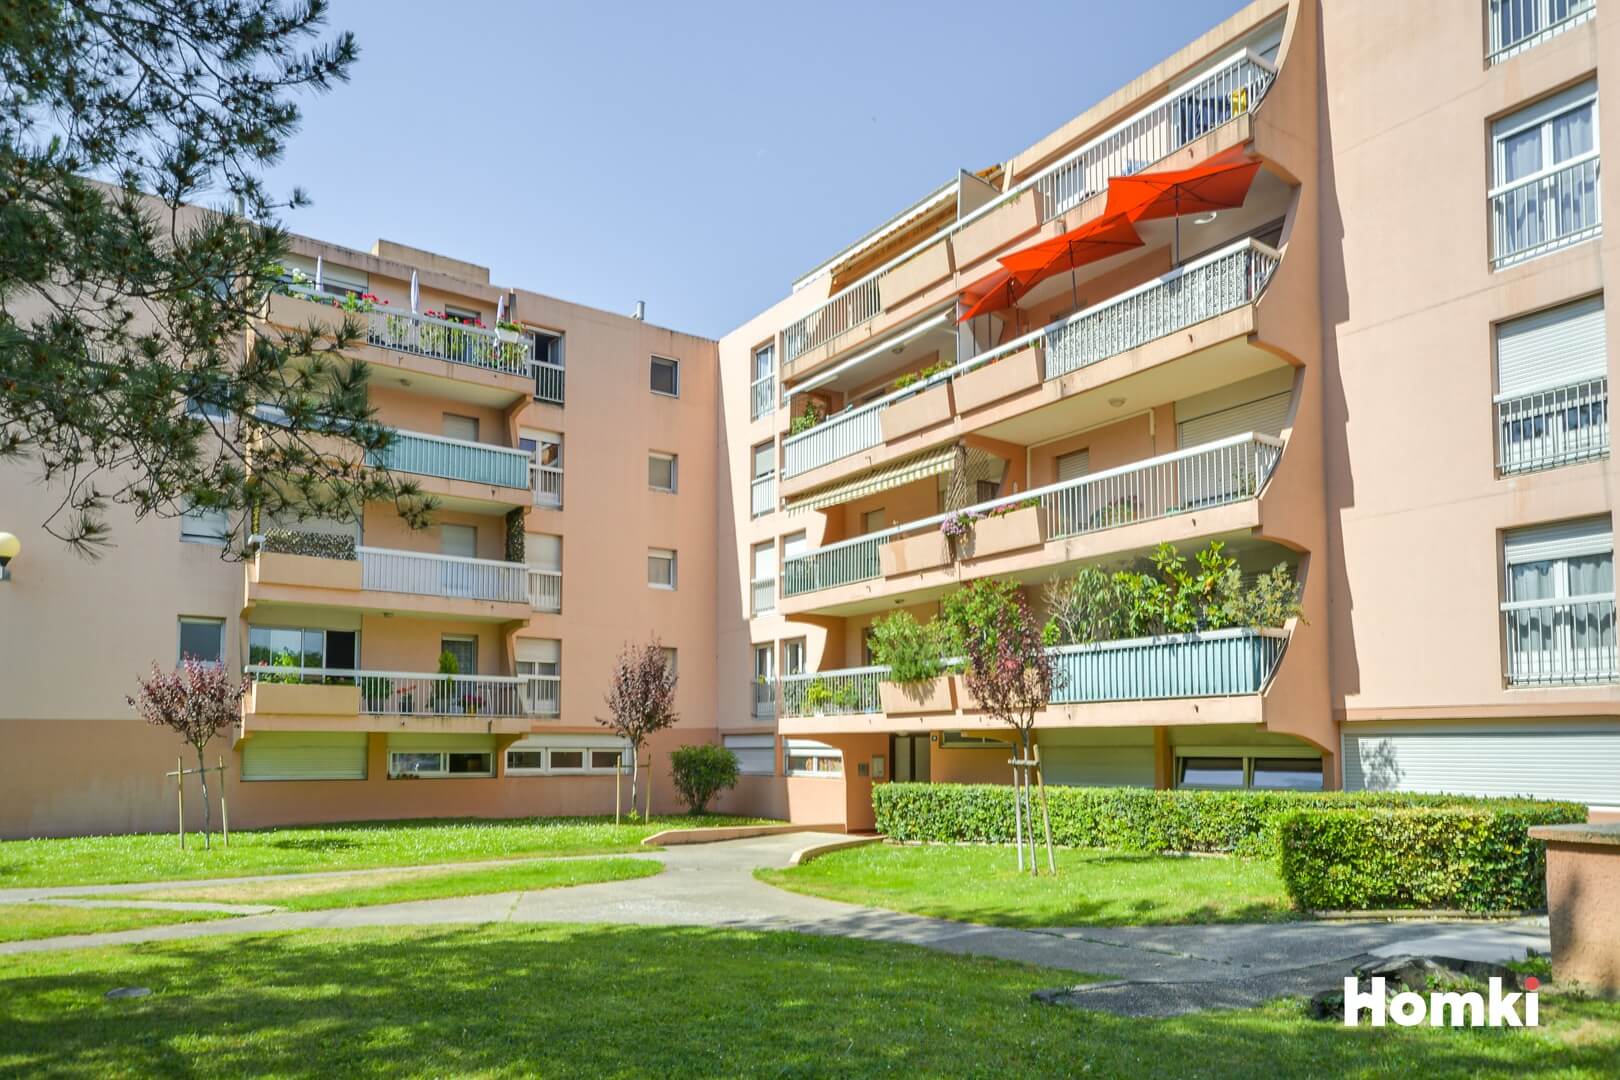 Homki - Vente Appartement  de 84.0 m² à Nîmes 30000